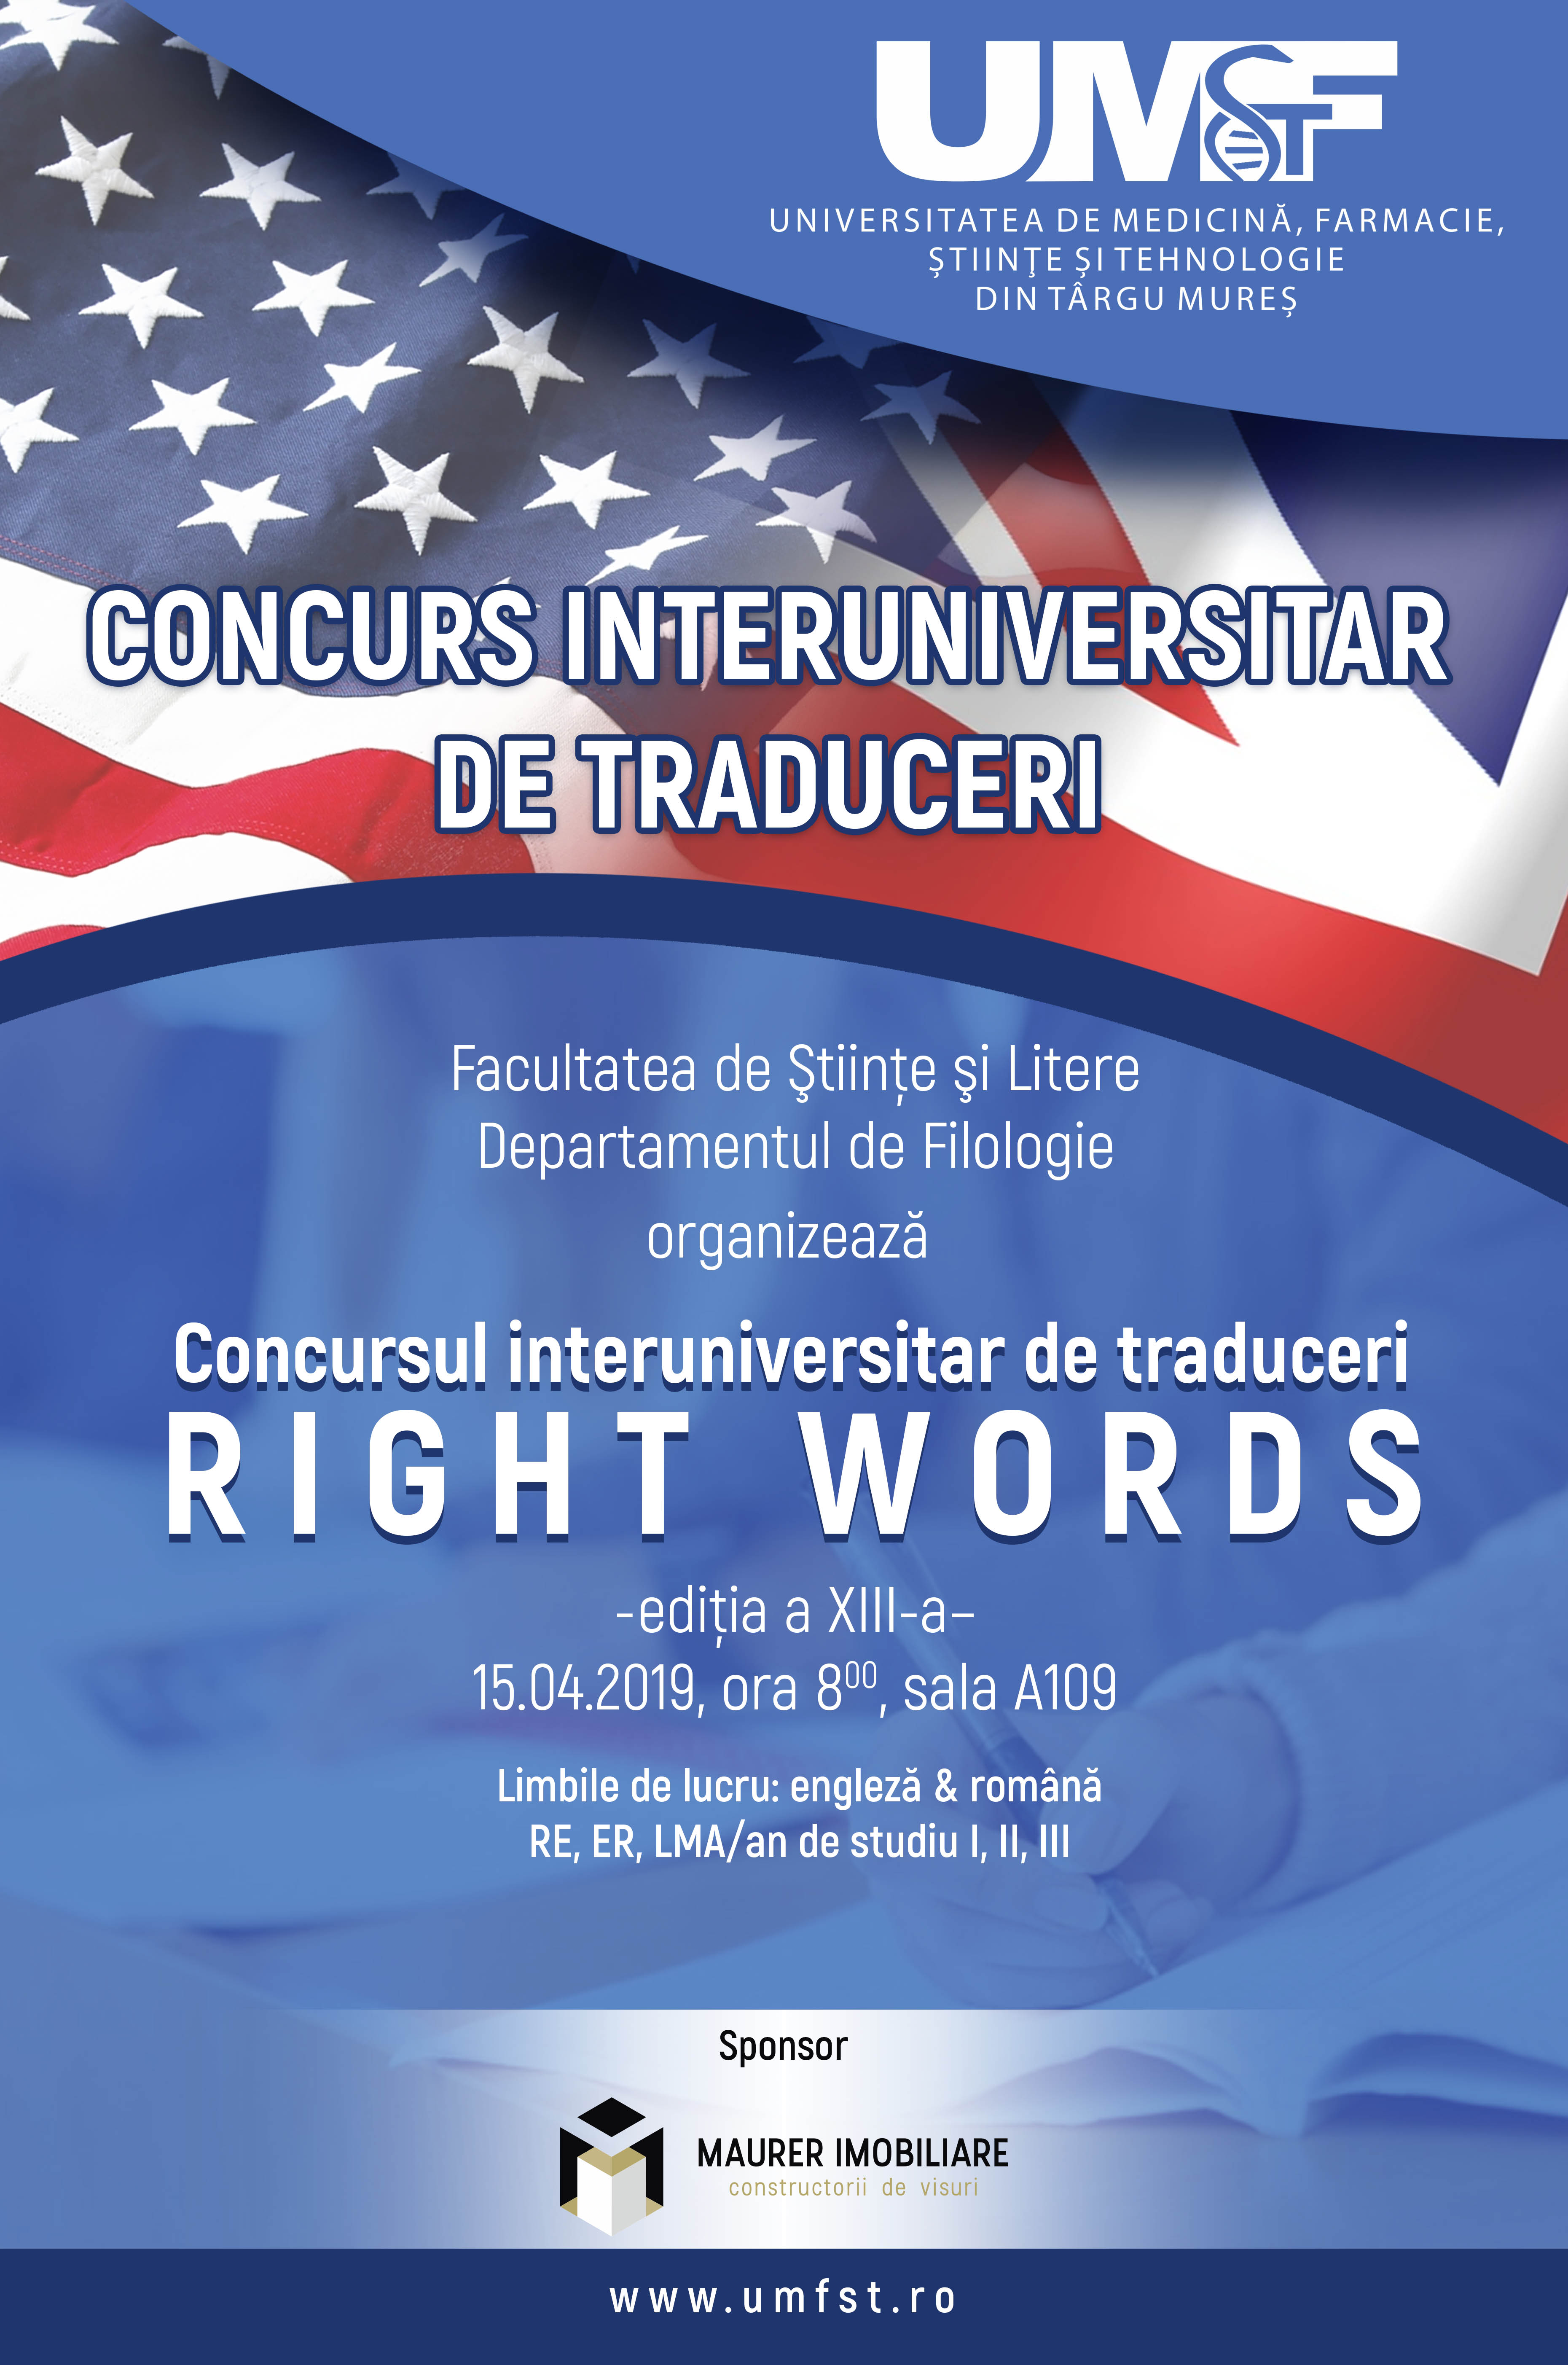 Concurs interuniversitar de traduceri la Facultatea de Științe și Litere